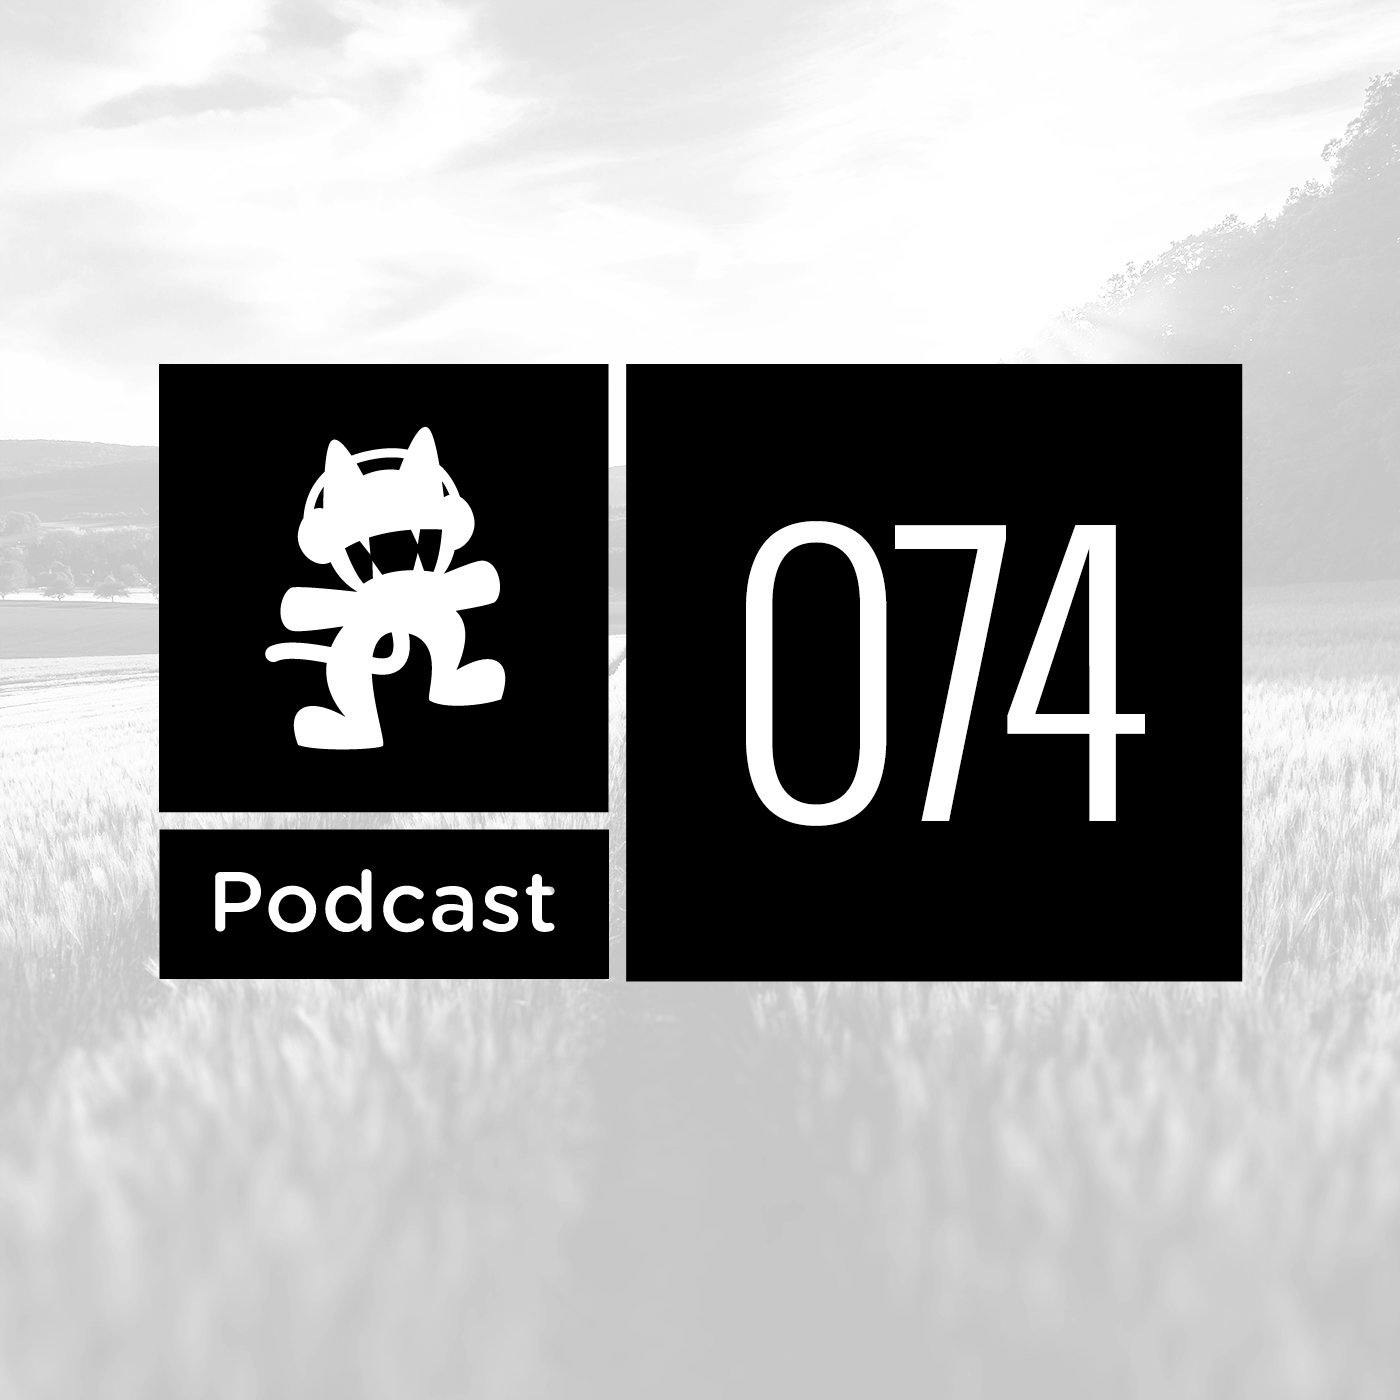 Monstercat Podcast Ep. 074